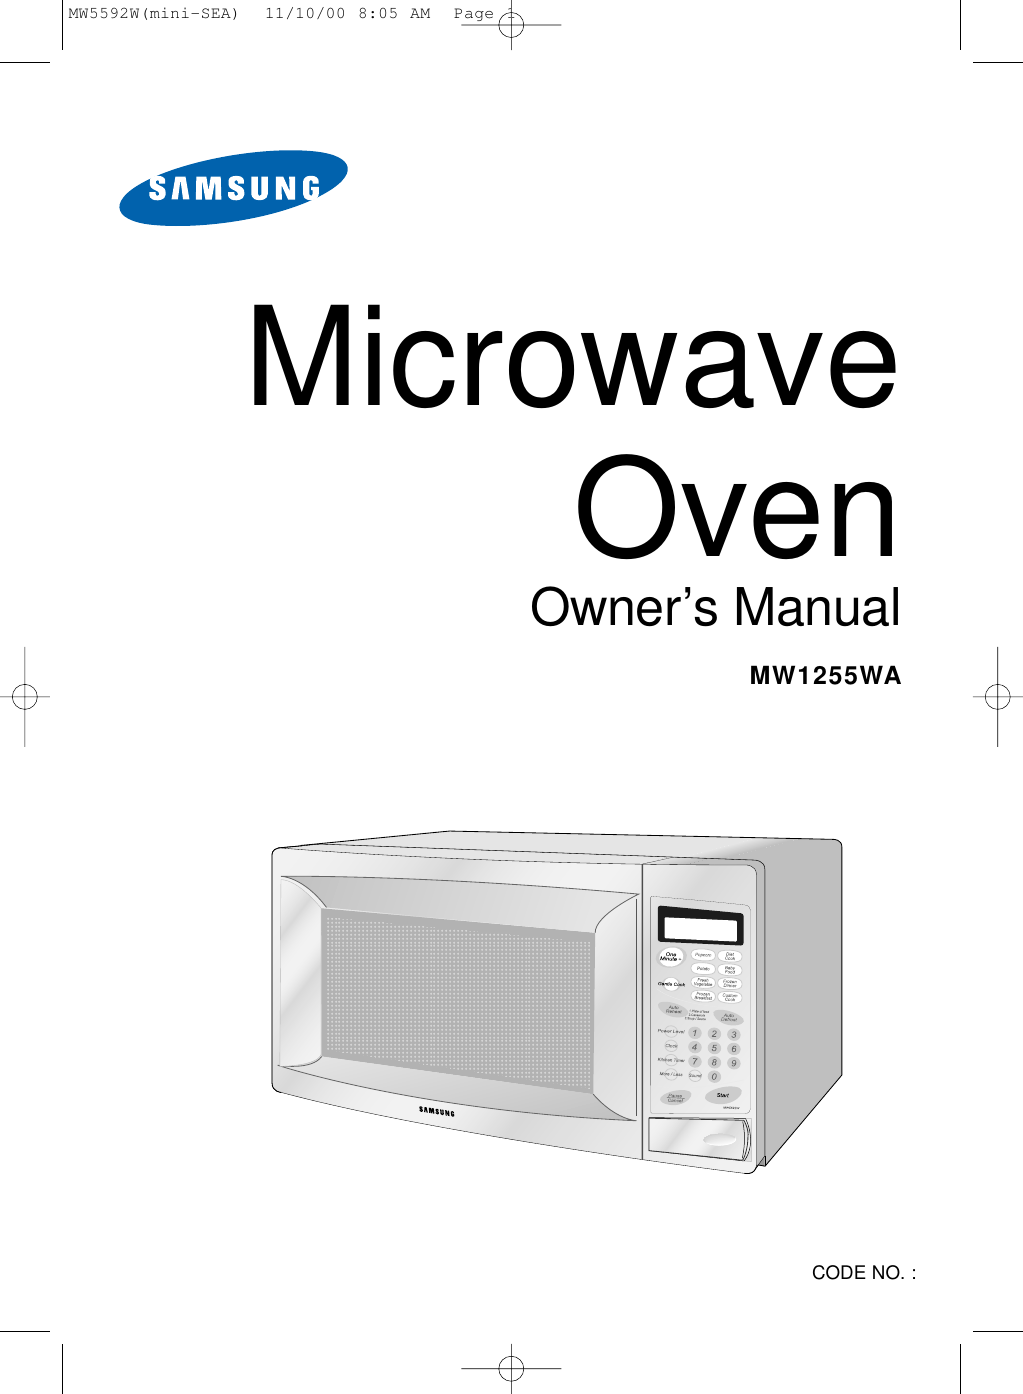 Microwave OvenOwner’s ManualMW1255WACODE NO. : MW5592W(mini-SEA)  11/10/00 8:05 AM  Page 1